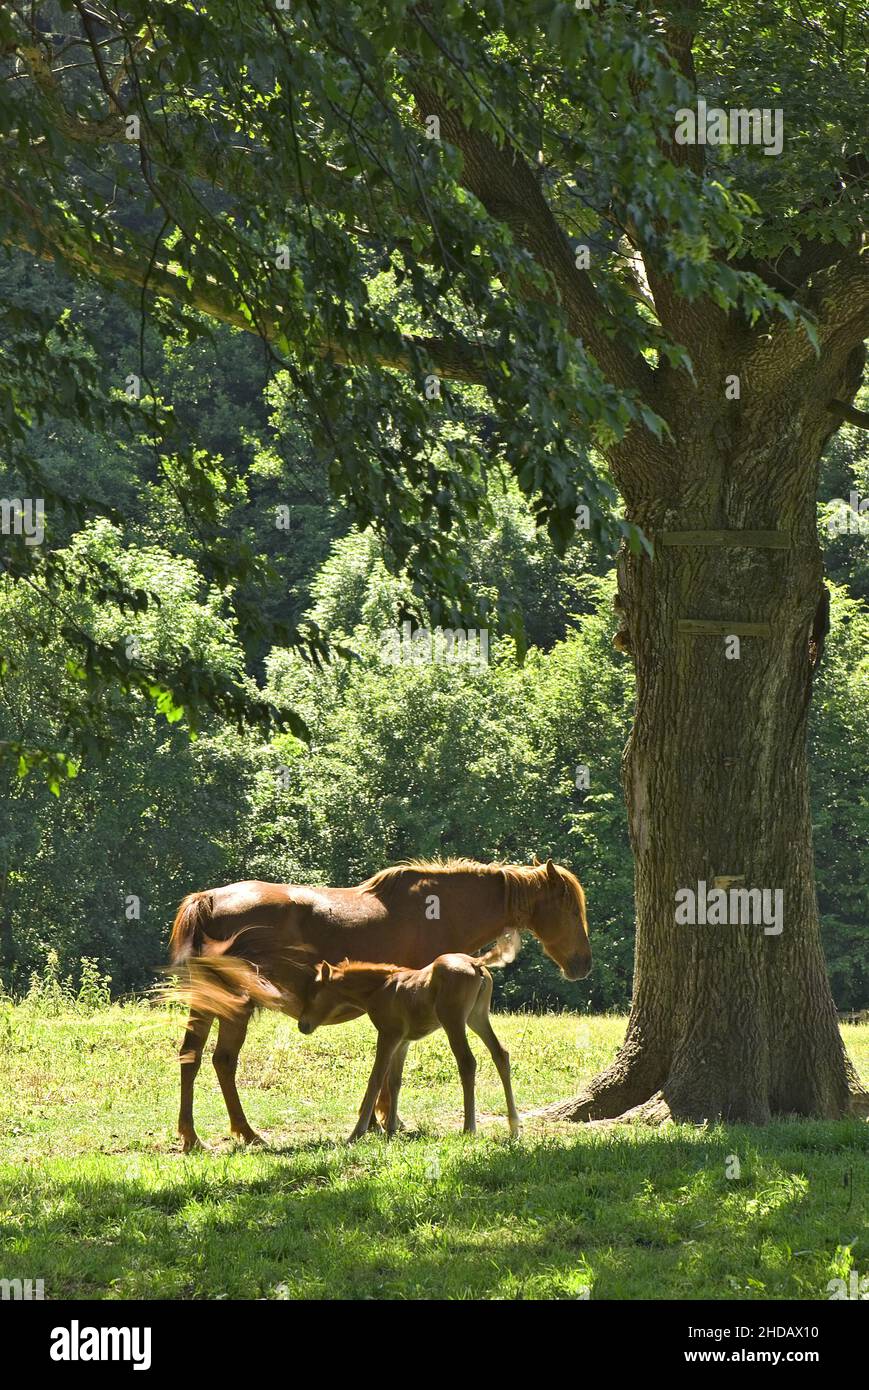 Le cheval - Equus ferus cabalus, grand animal domestique populaire sur les pâturages, Zlin, République Tchèque. Banque D'Images